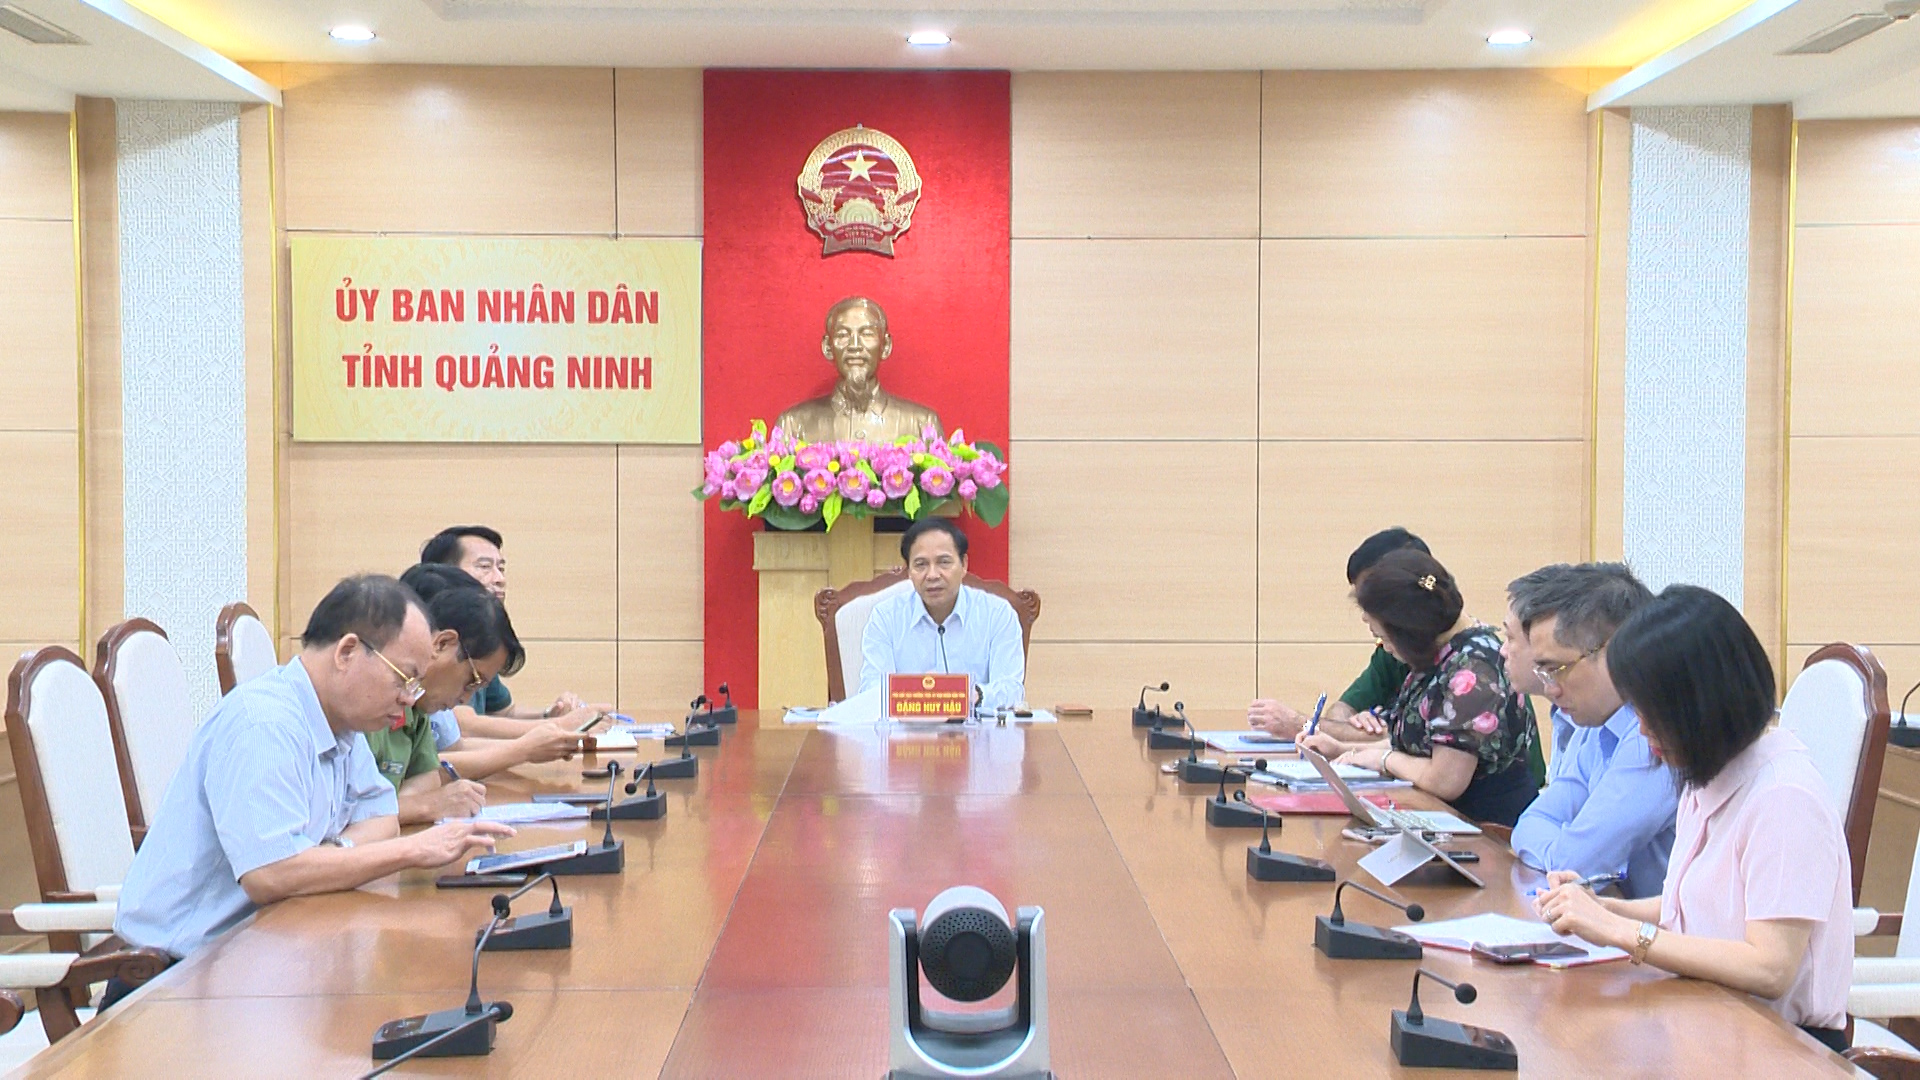 Đồng chí Đặng Huy Hậu, Phó Chủ tịch Thường trực UBND tỉnh chỉ đạo các ngành, đơn vị liên quan tiếp tục triển khai các giải pháp cấp bách phòng chống dịch Covid-19